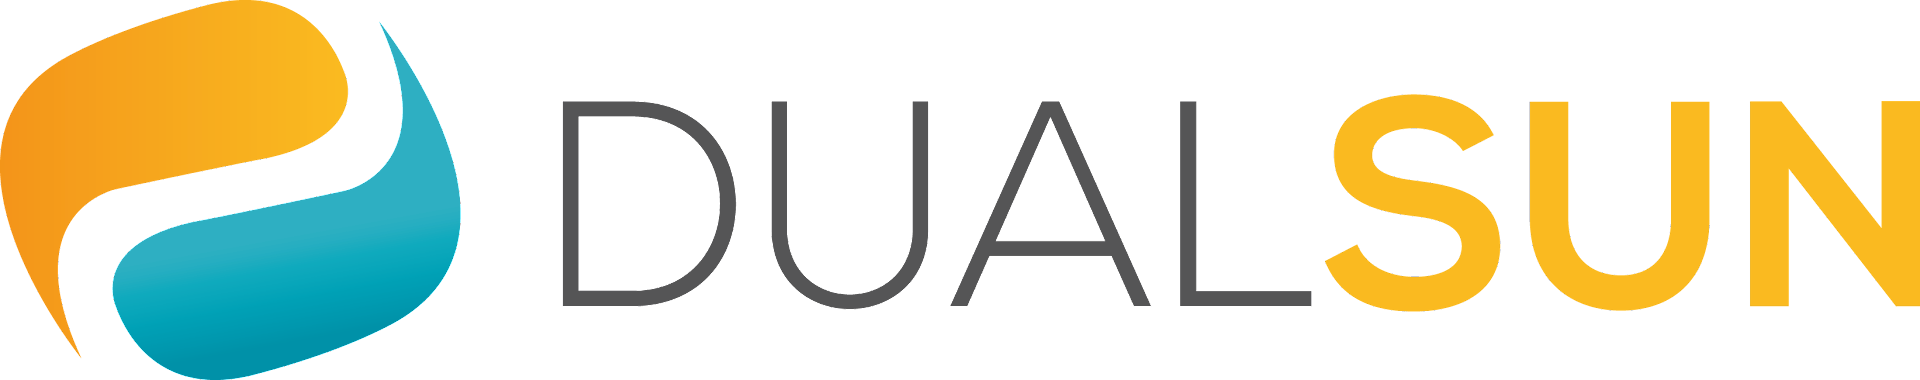 DualSun_Logo1.png